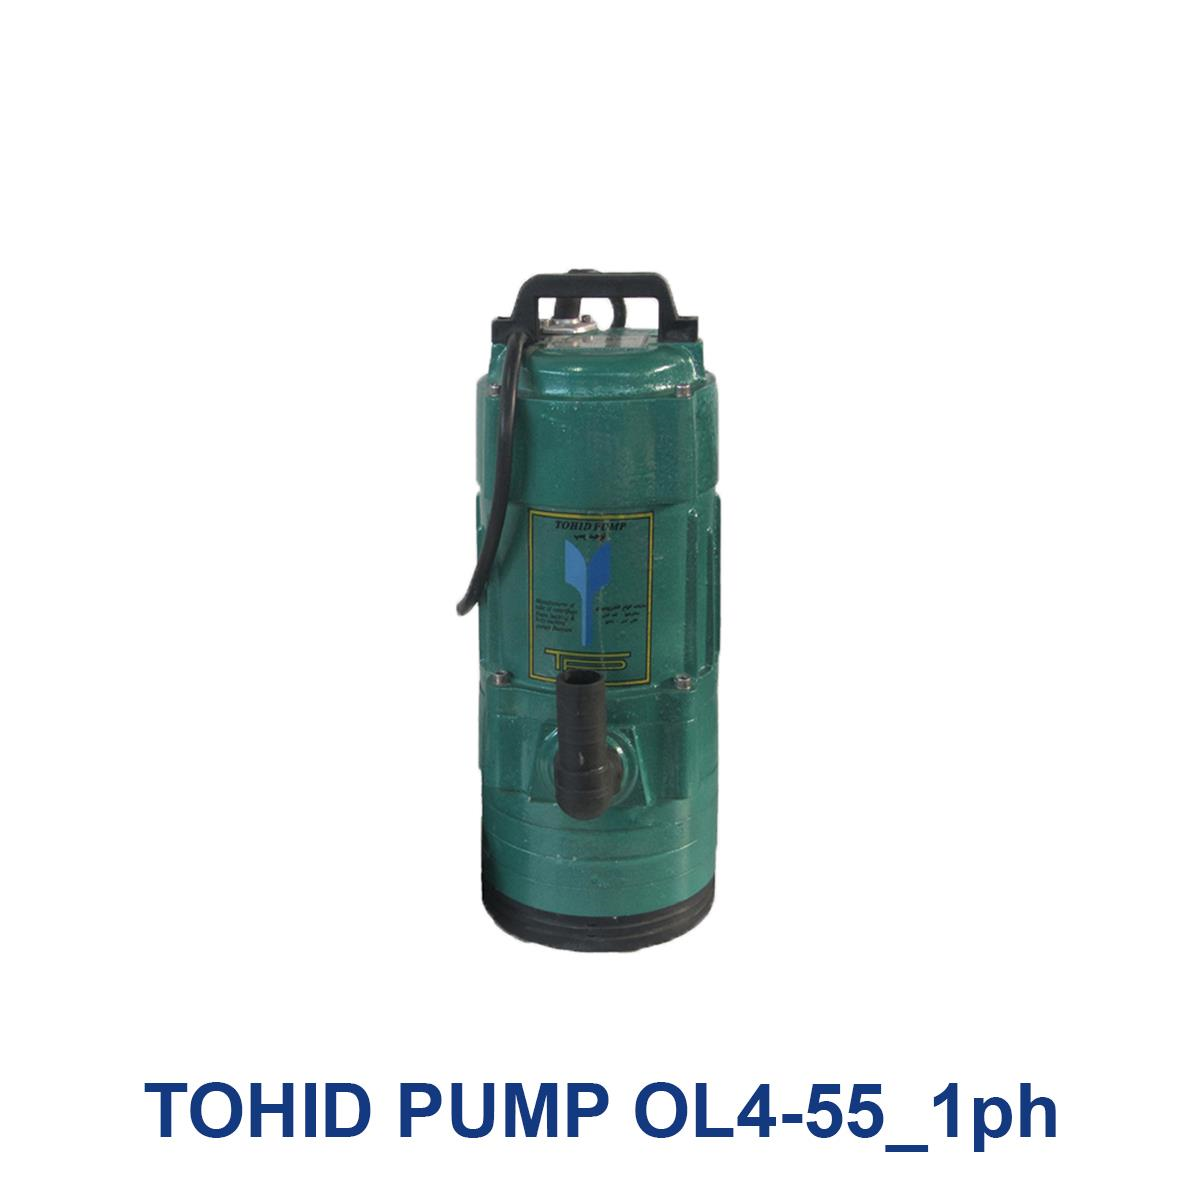 TOHID-PUMP-OL4-55_1ph